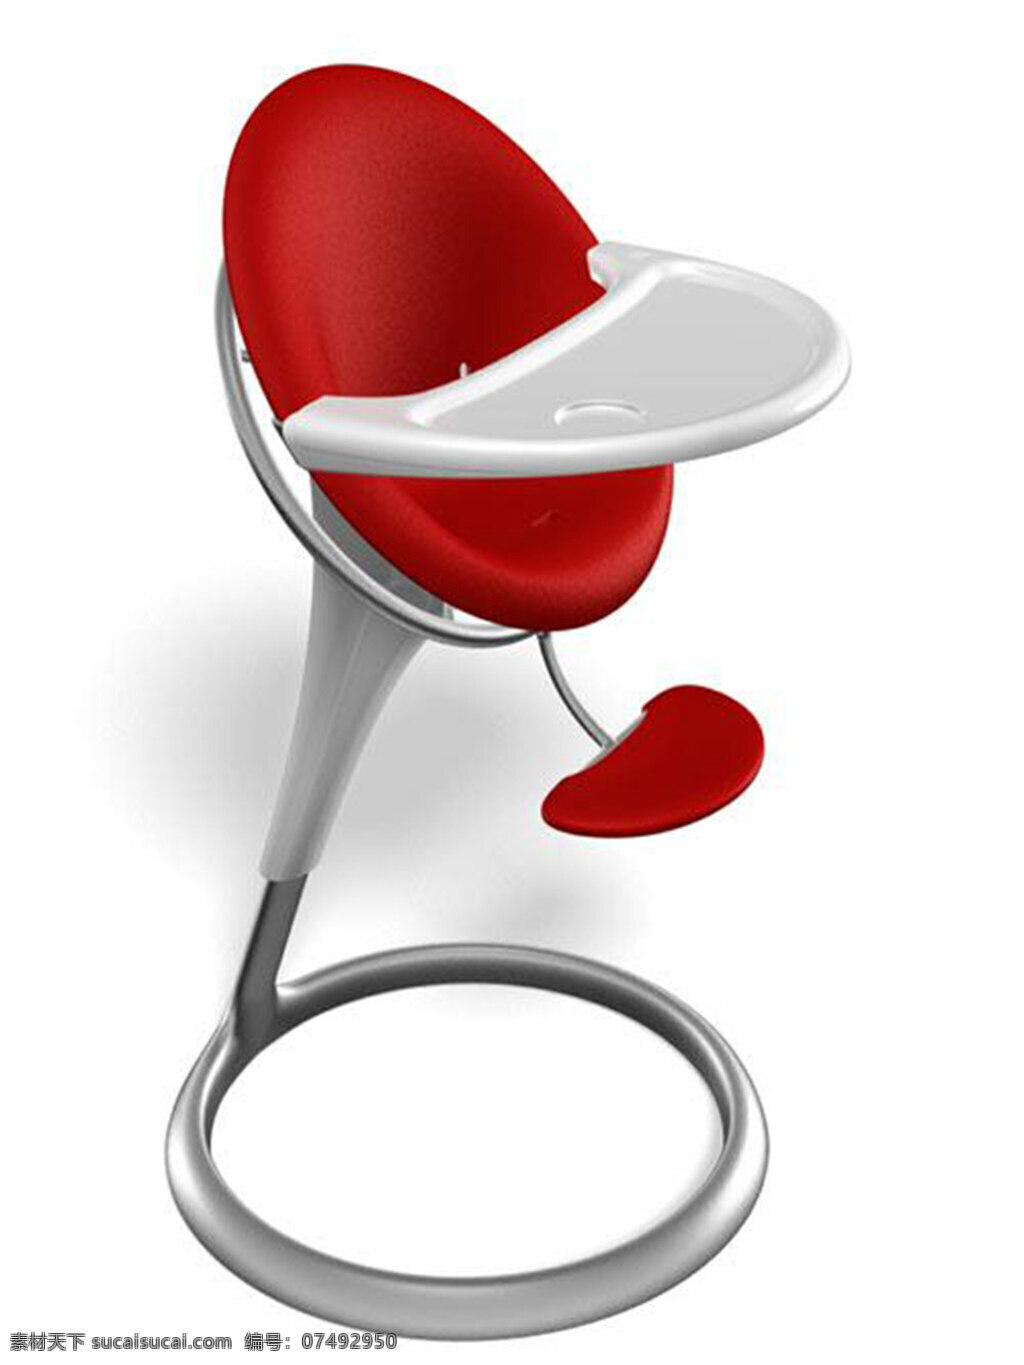 国外 高架 椅子 设计欣赏 产品设计 创意 凳子 工业设计 家居 生活